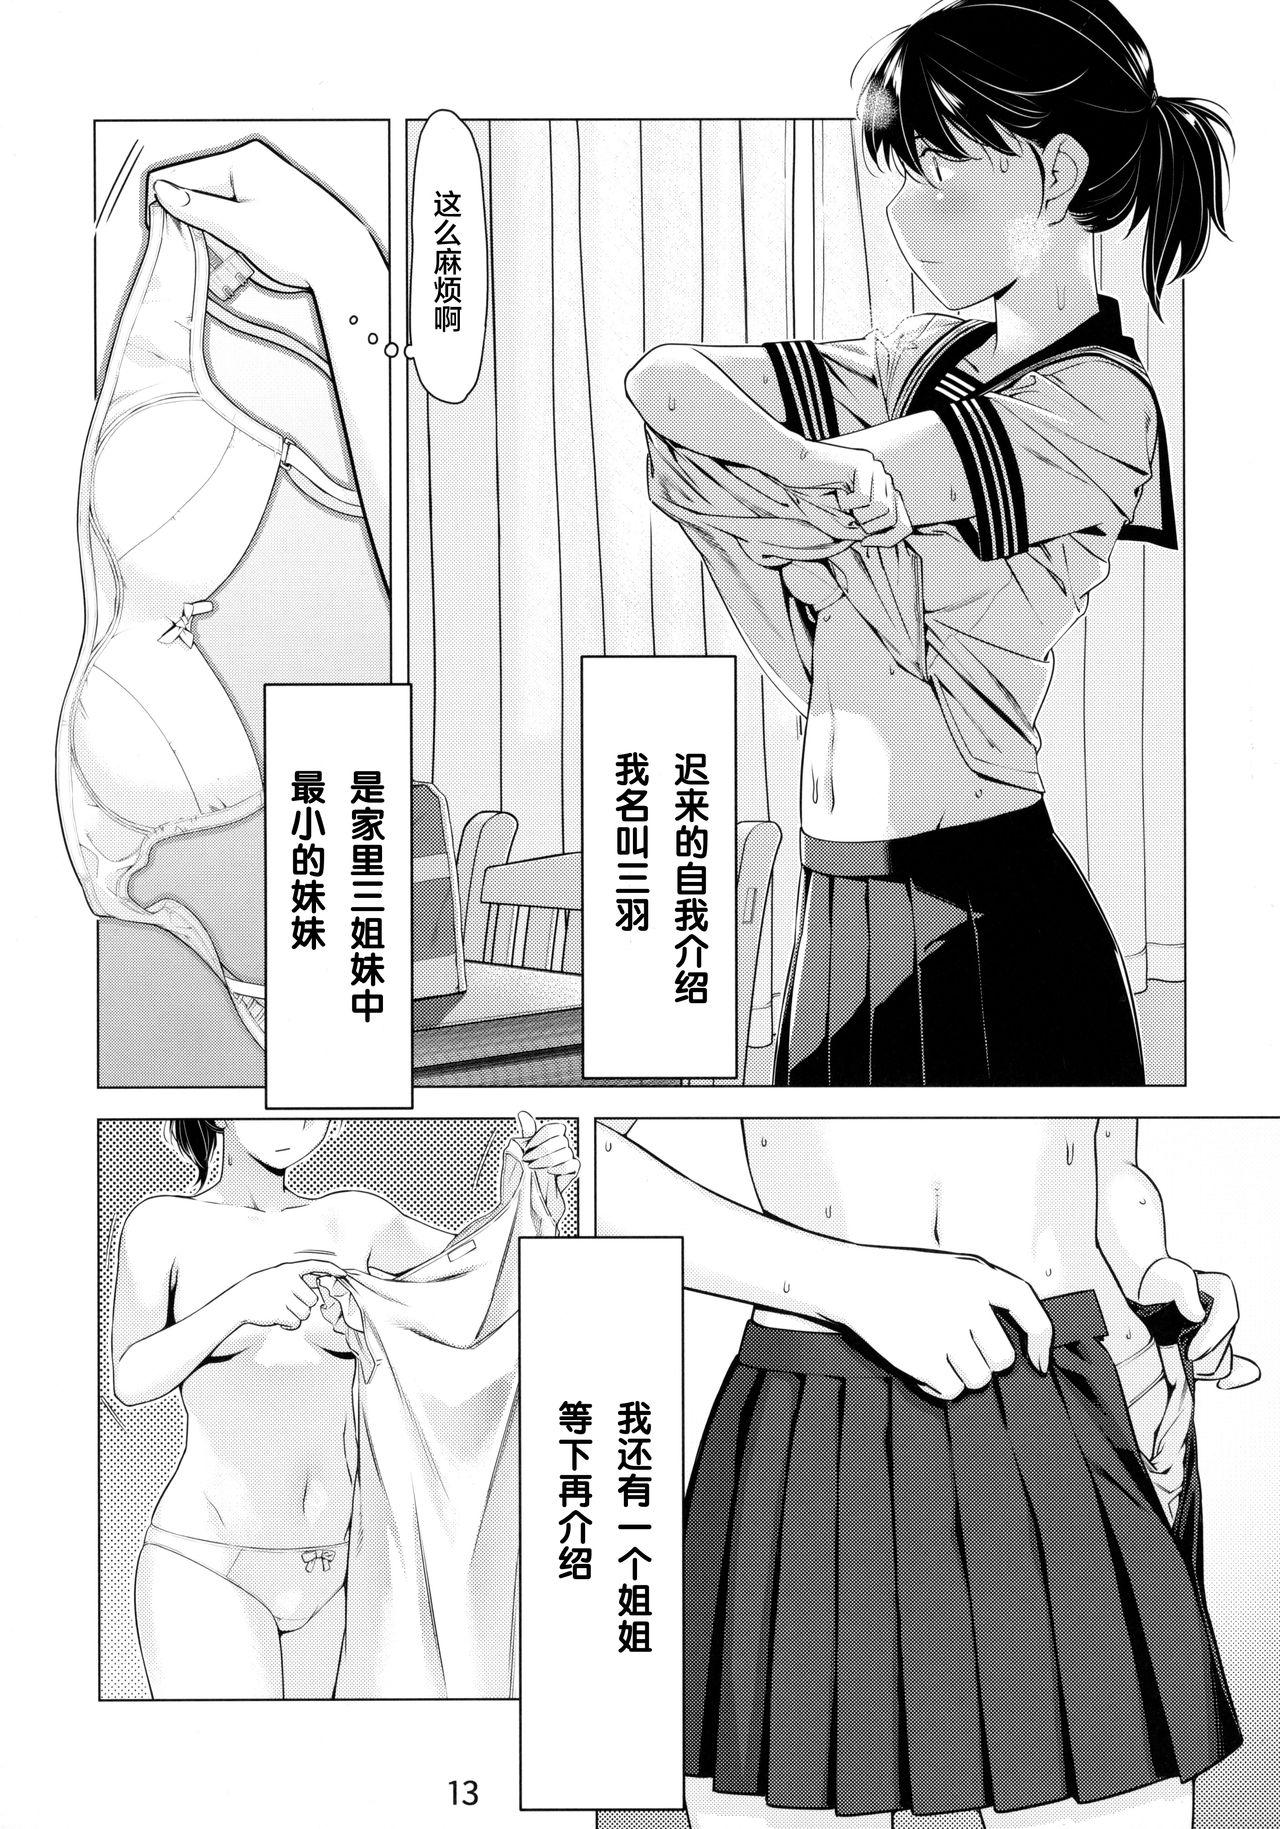 Messy Otonano Omochiya 6 Kan - Original Transvestite - Page 13